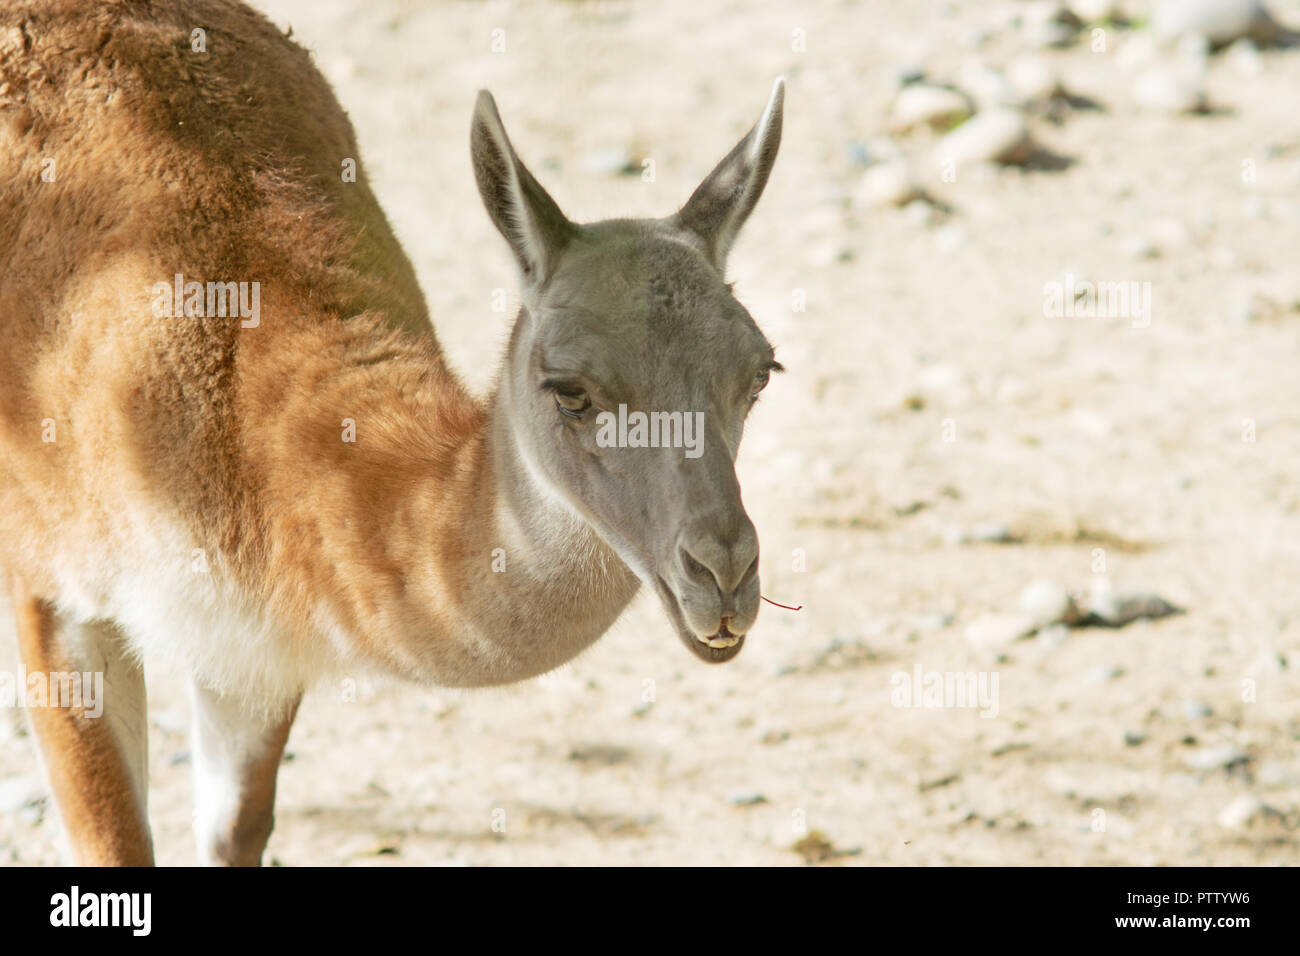 Portrait d'un guanaco (Lama guanicoe), un camélidé originaire d'Amérique du Sud Banque D'Images